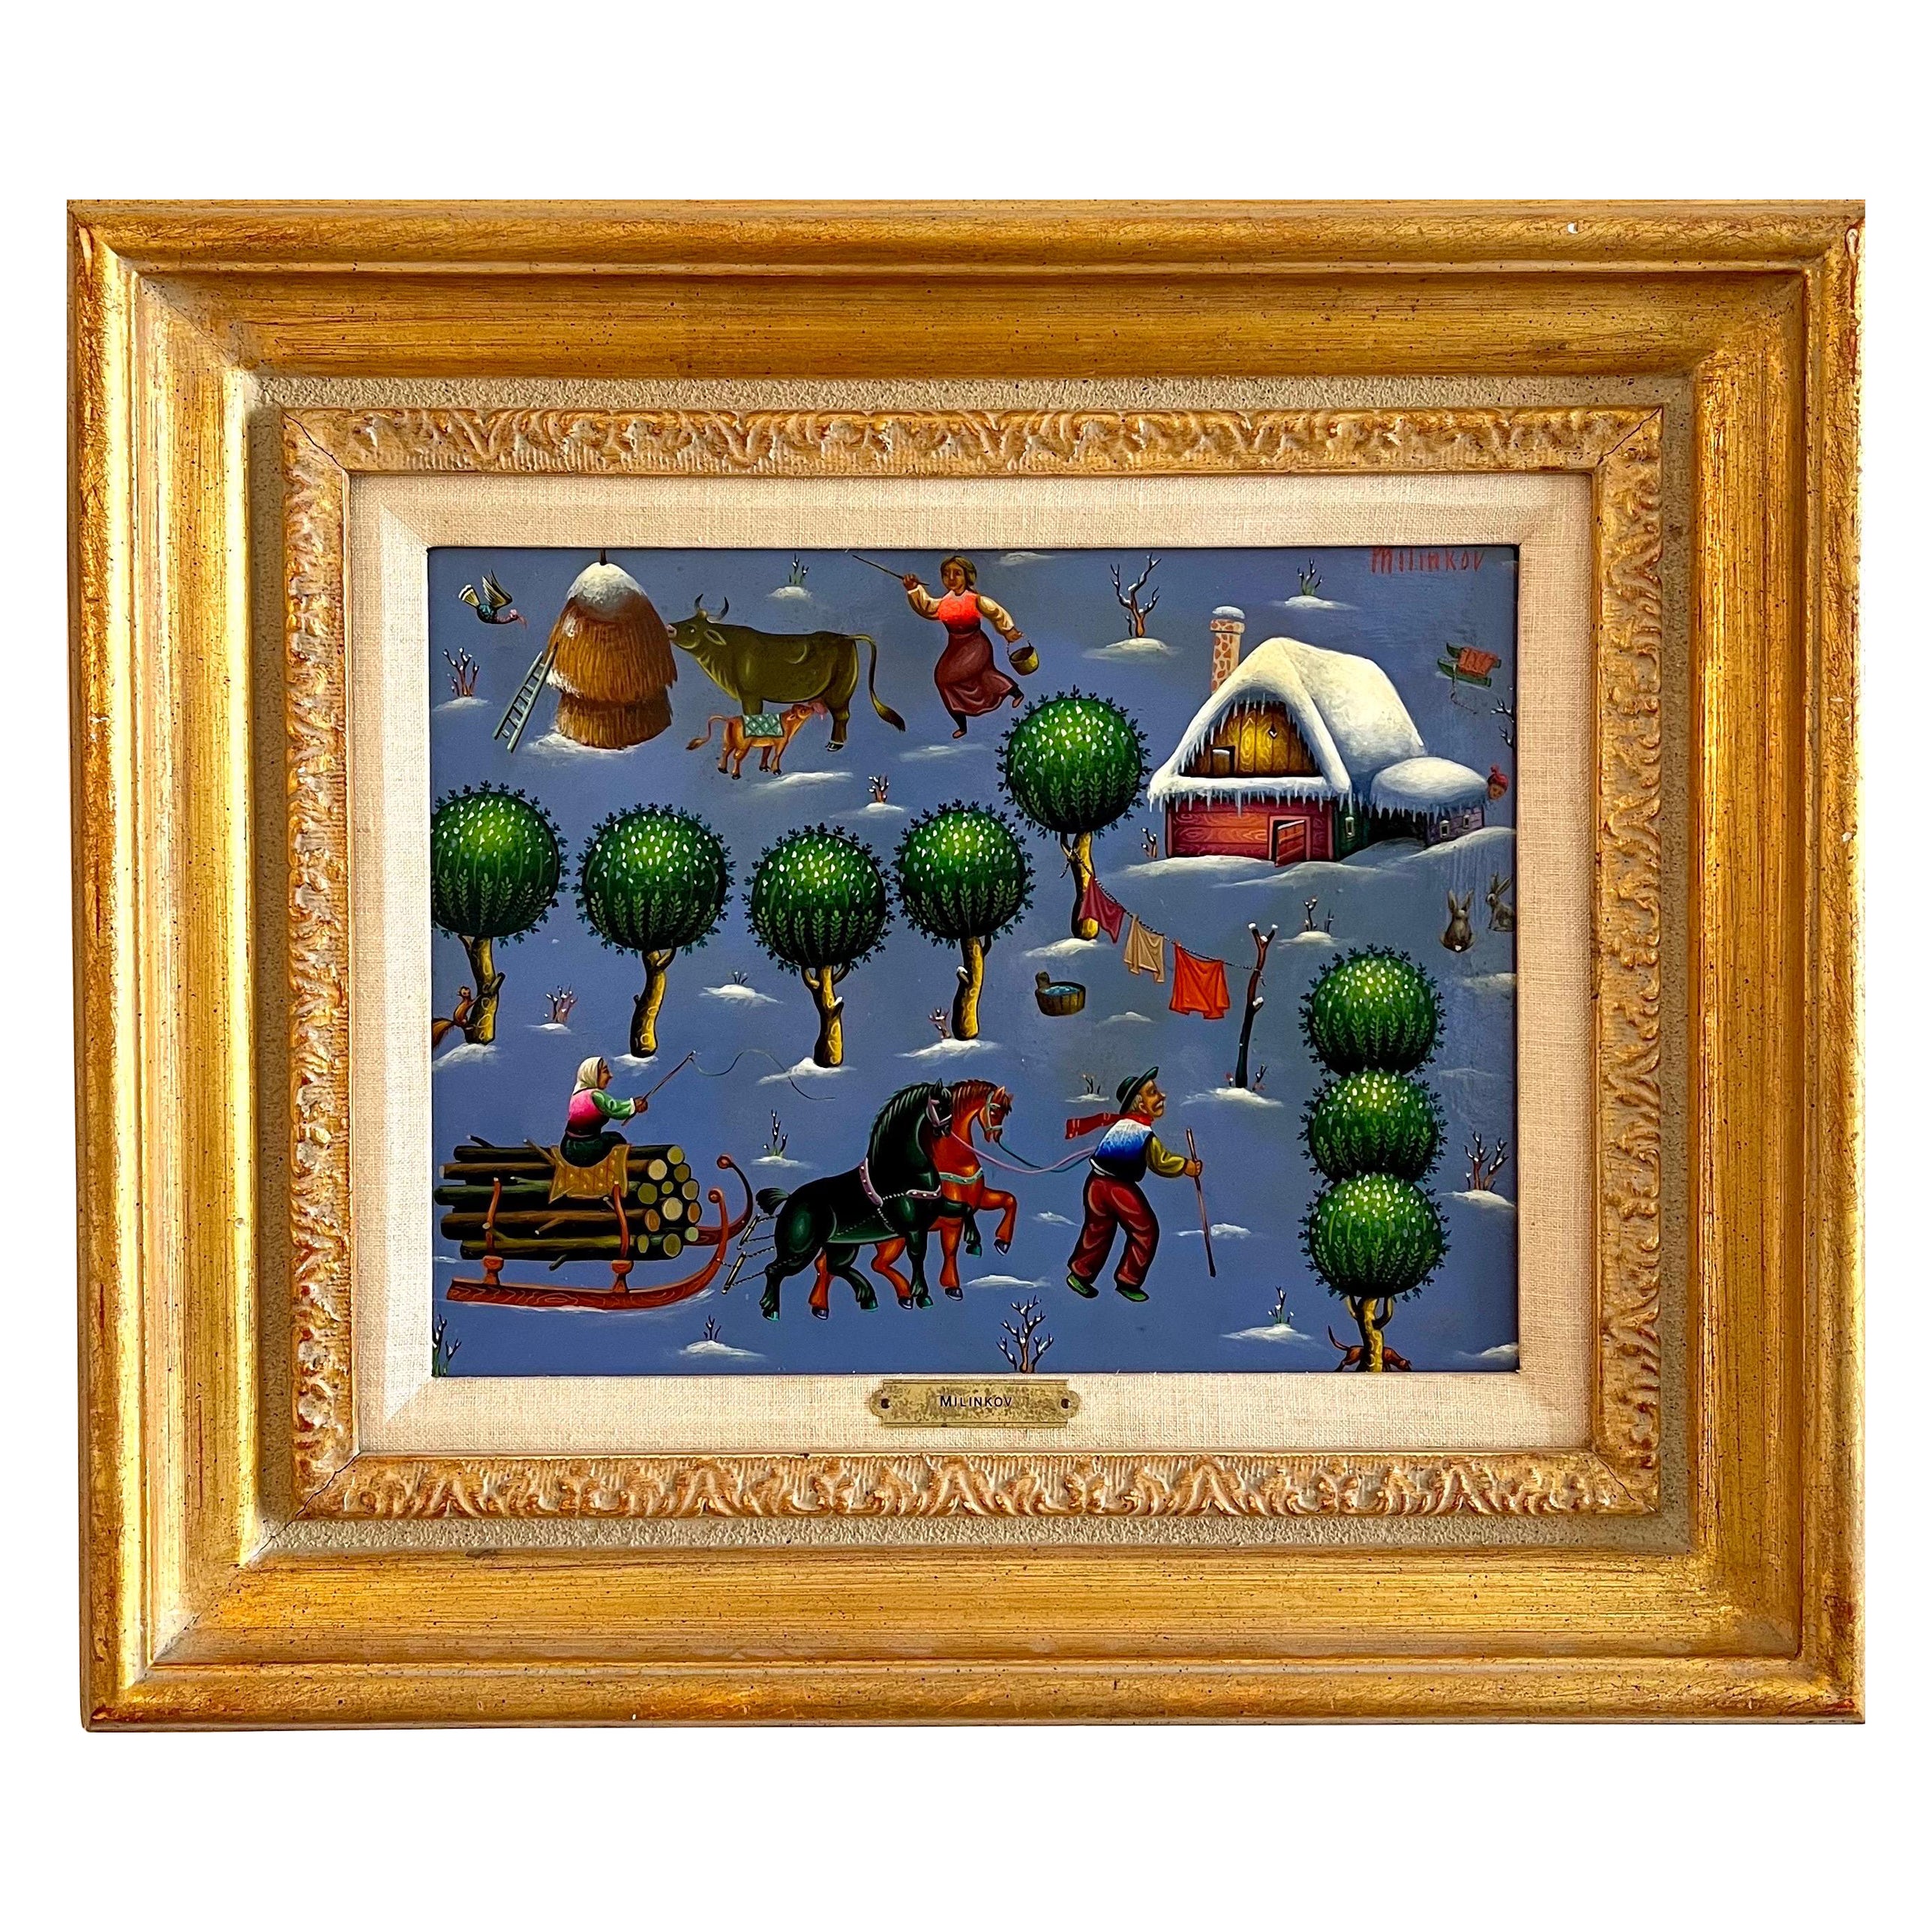 Ljubomir Milinkov (1938) 
Ölgemälde auf Karton, 
Skurrile ländliche Landschaft auf dem Bauernhof 
Handsigniert oben rechts, 
Abmessungen: Gemälde 12-1/2 x 15-1/2 Zoll. gerahmt 18,5 x 21,5 Zoll

Ljubomir Milinkov stellt mit kräftigen Farben und